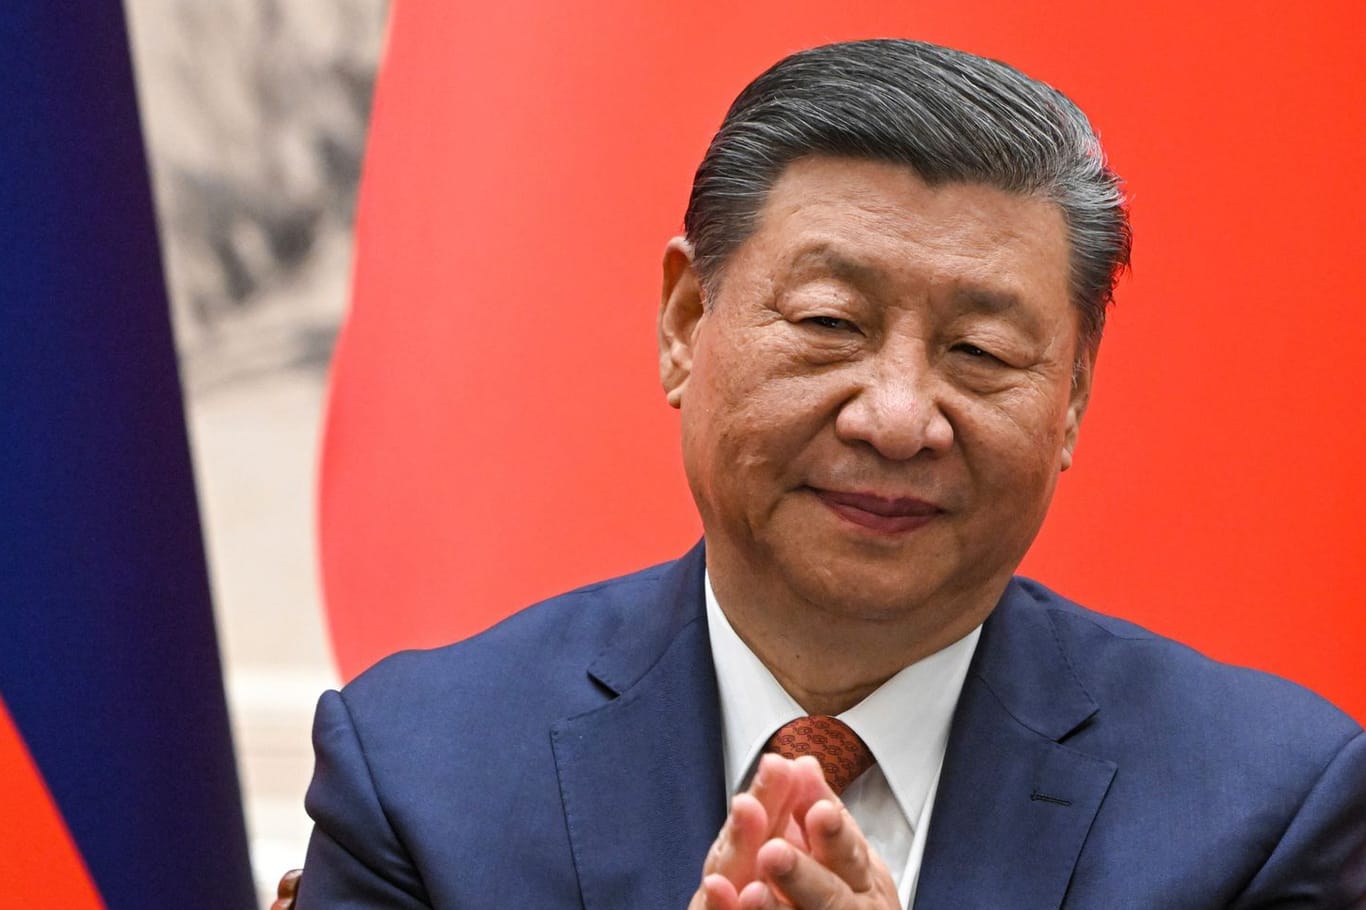 Xi Jinping reist aktuell in zahlreiche Regionen in der Welt: Die Ukraine hat der chinesischen Führung vorgeworfen, den Friedensgipfel in der Schweiz zu behindern.